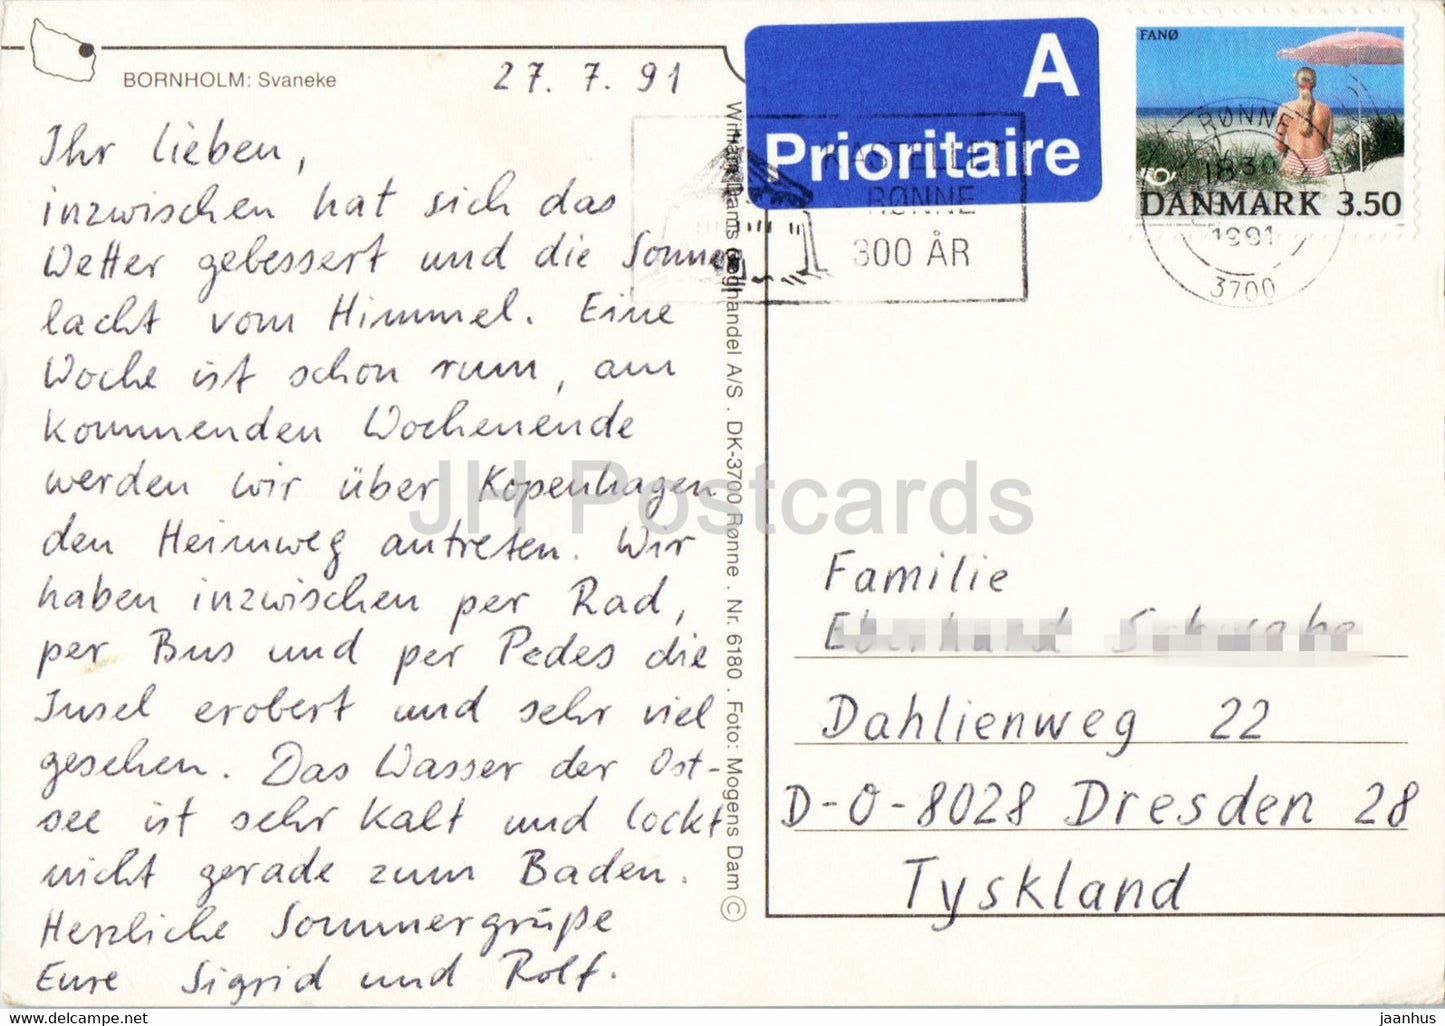 Bornholm - Svaneke - Windmühle - Pferd - Hafen - Multiview - 1991 - Dänemark - gebraucht